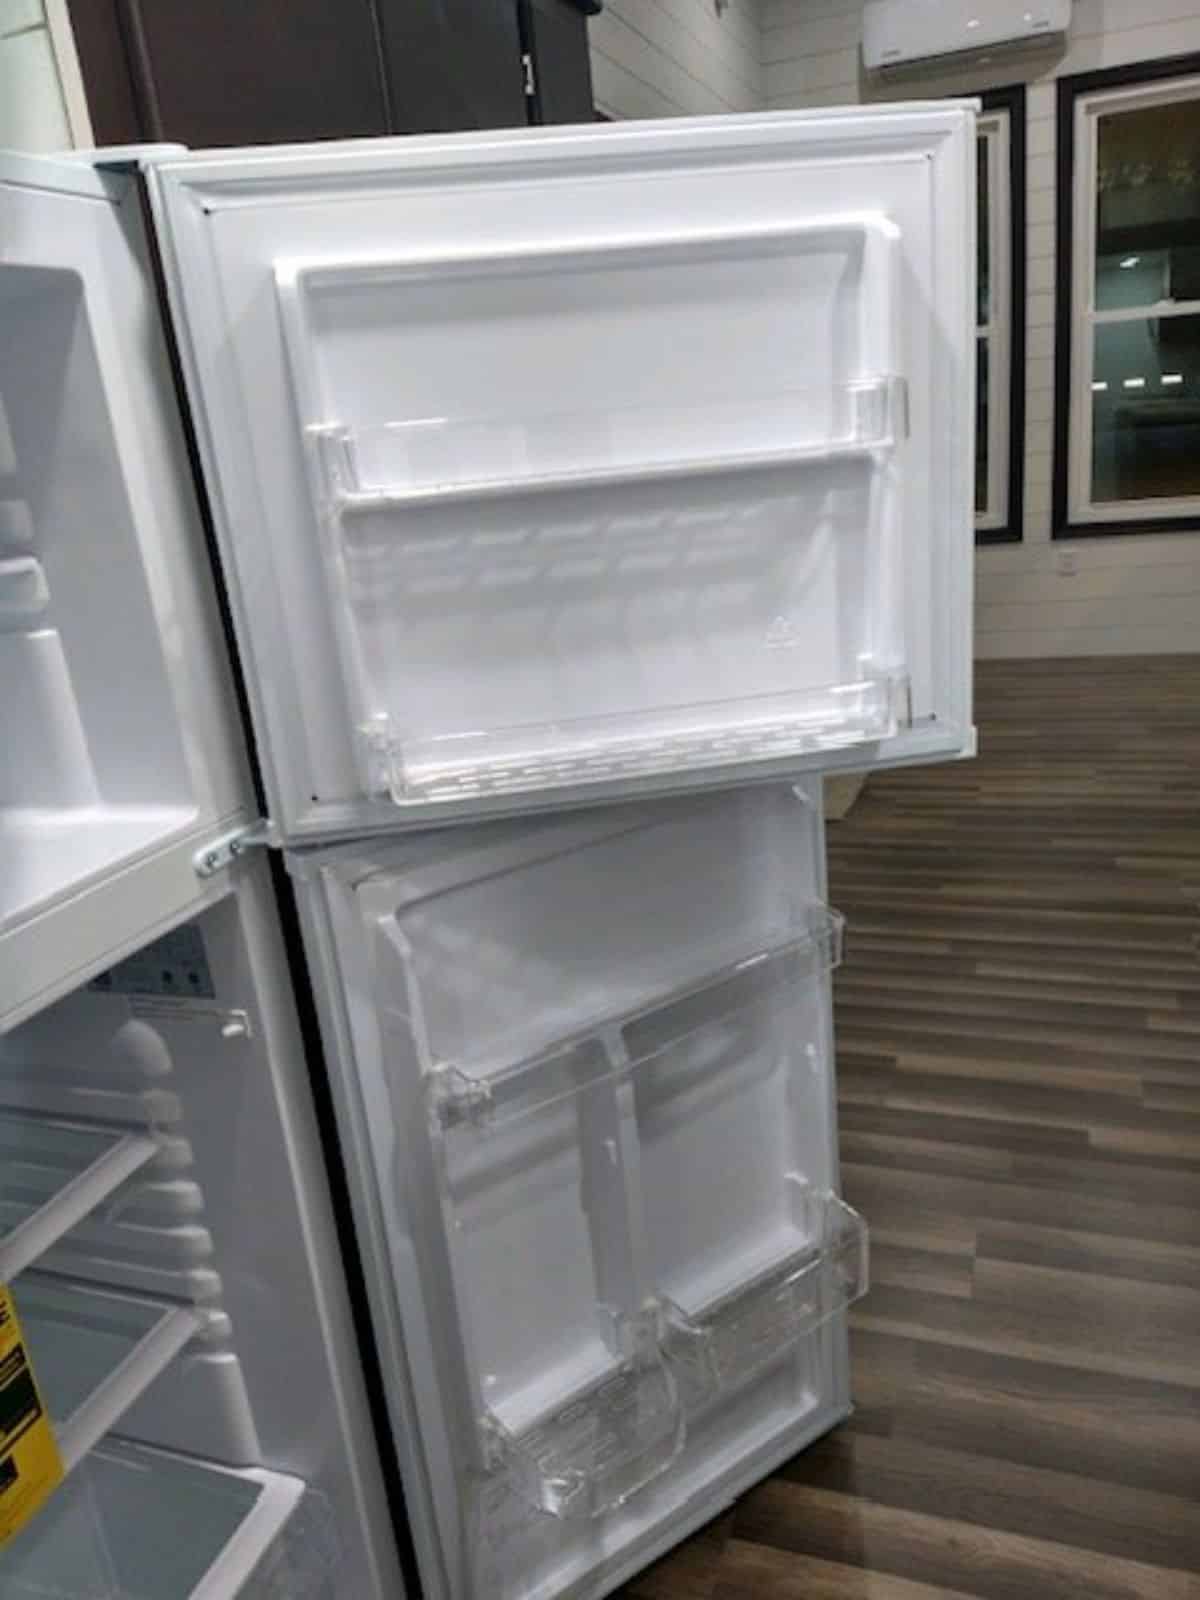 Double door refrigerator in kitchen